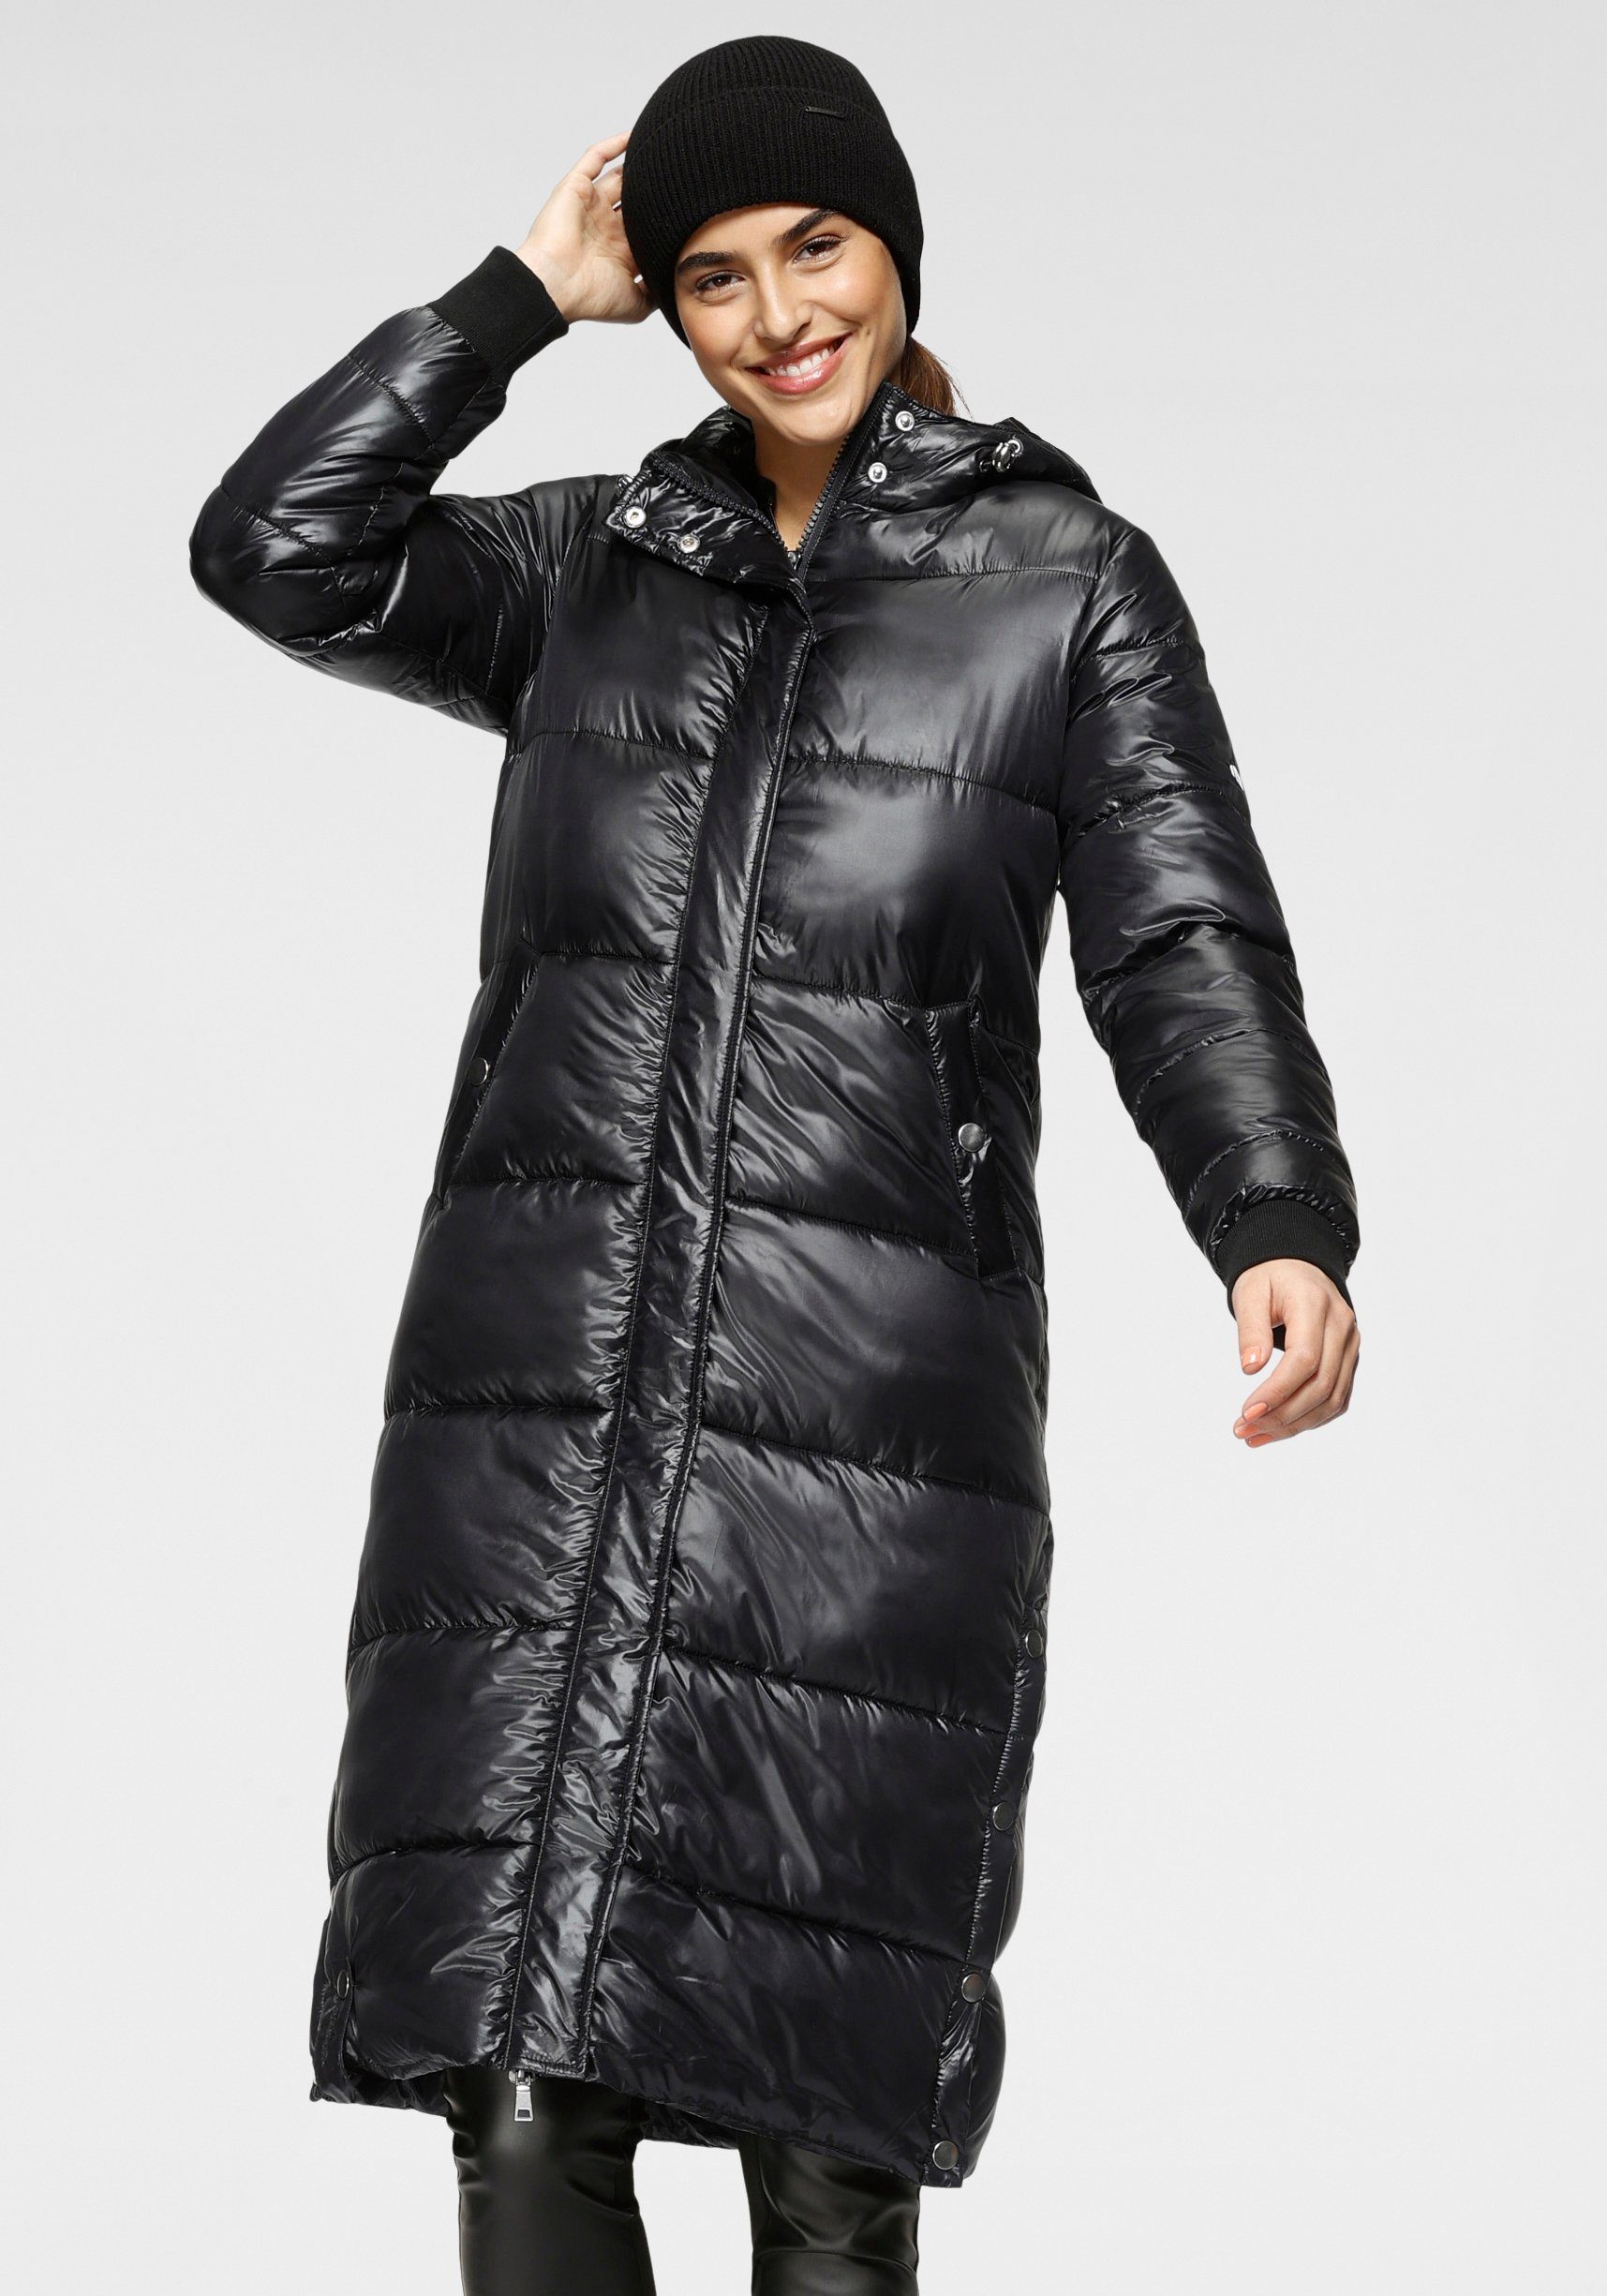 ALPENBLITZ Steppmantel Wintermärchen in extra langer Form mit schimmerndem Glanz black (Jacke aus nachhaltigem Material)